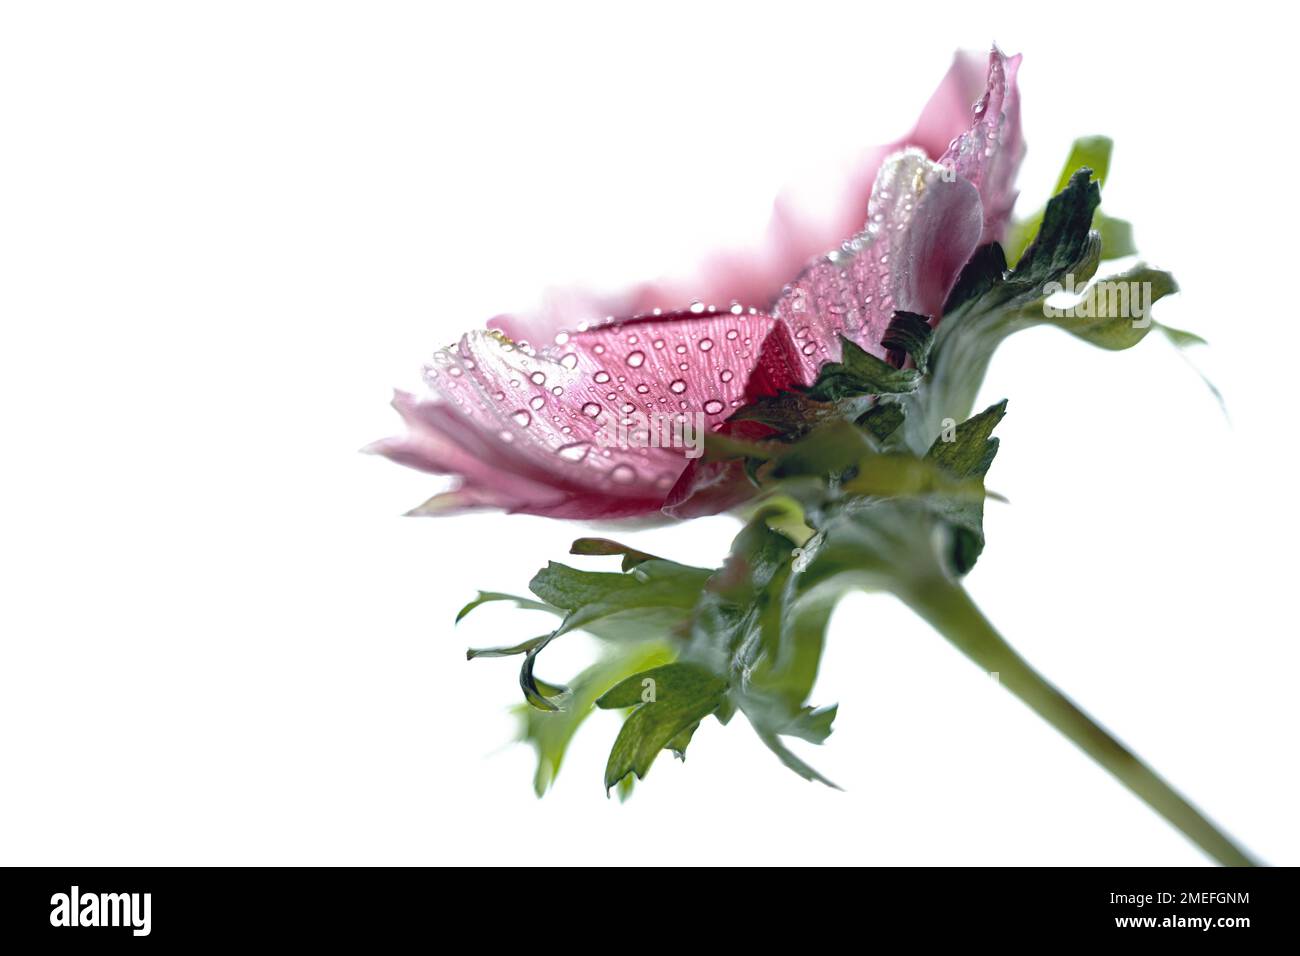 Testa di anemone viola rosa con gocce di rugiada all'interno dei petali isolati su uno sfondo bianco, primo piano, spazio di copia, messa a fuoco selezionata, dep molto stretto Foto Stock